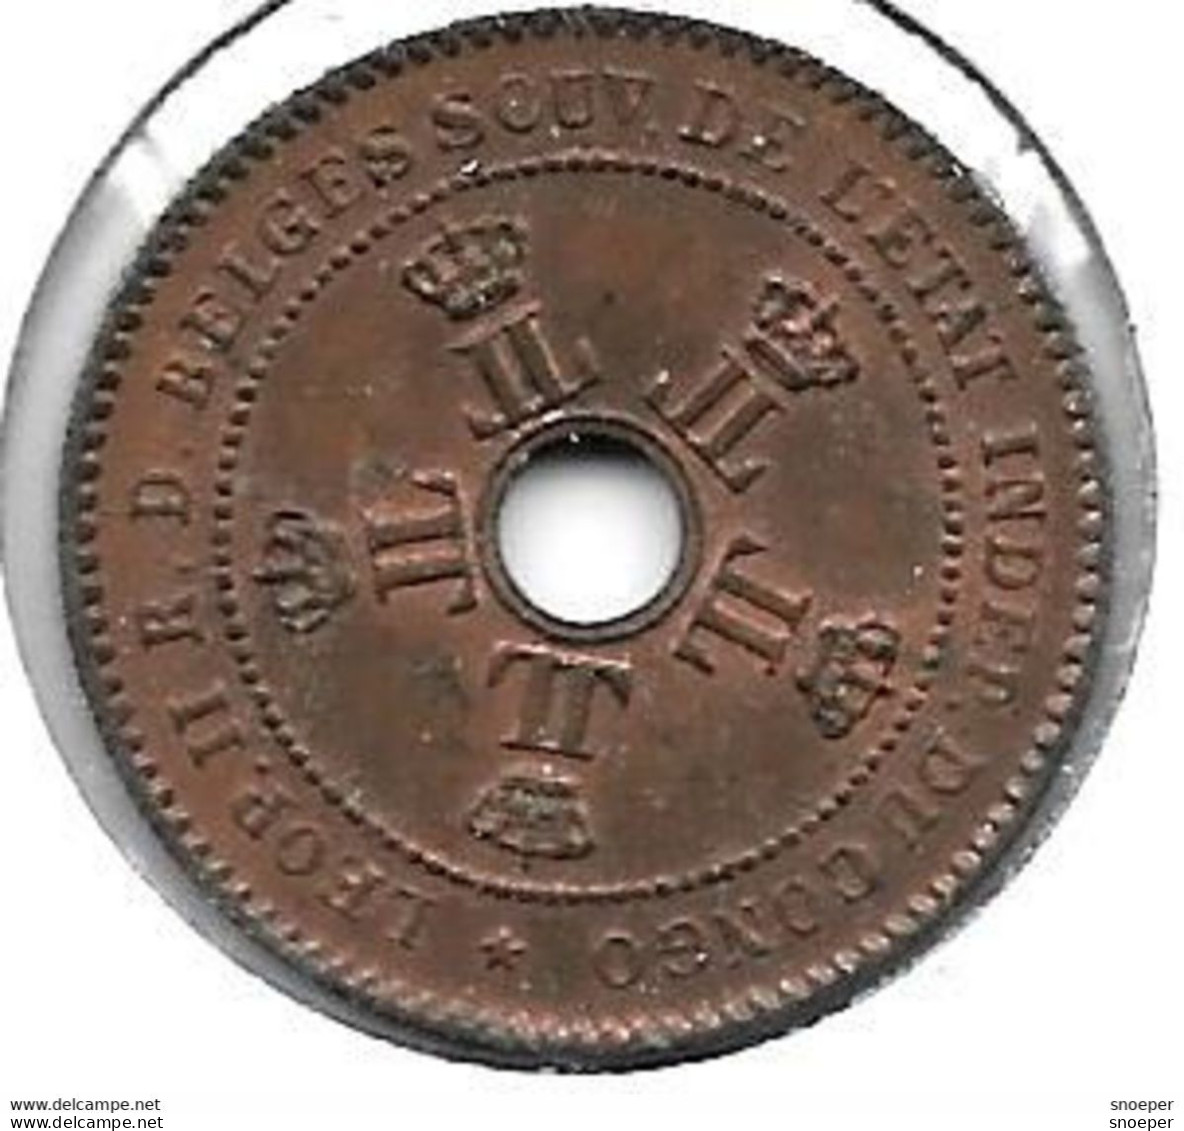 Belgian Congo 2 Centimes 1888 Km 2   Xf+/ms60 !! Look !!!! - 1885-1909: Leopold II